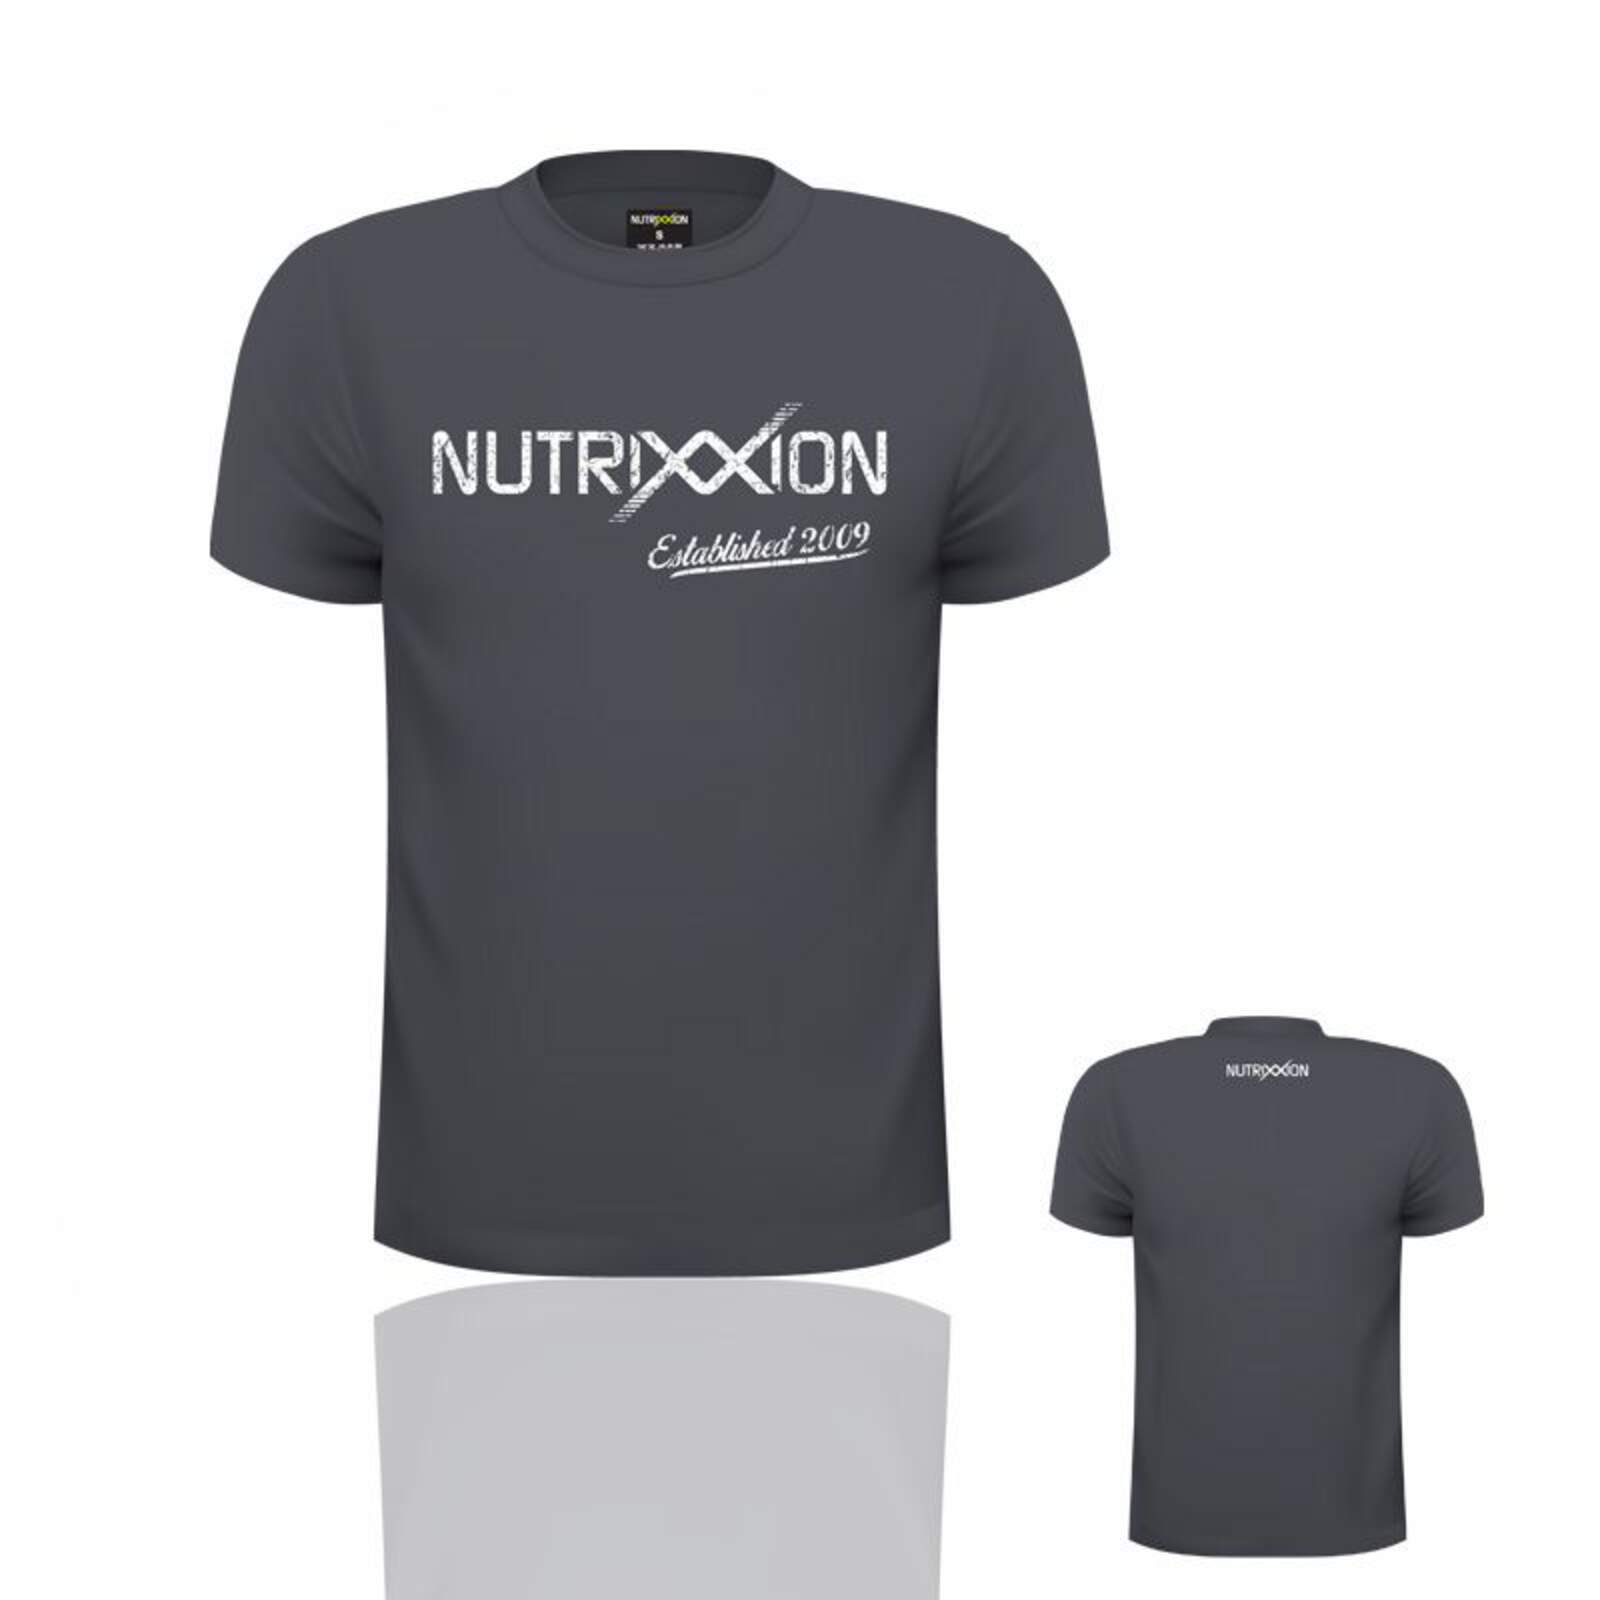 NUTRIXXION T-Shirt